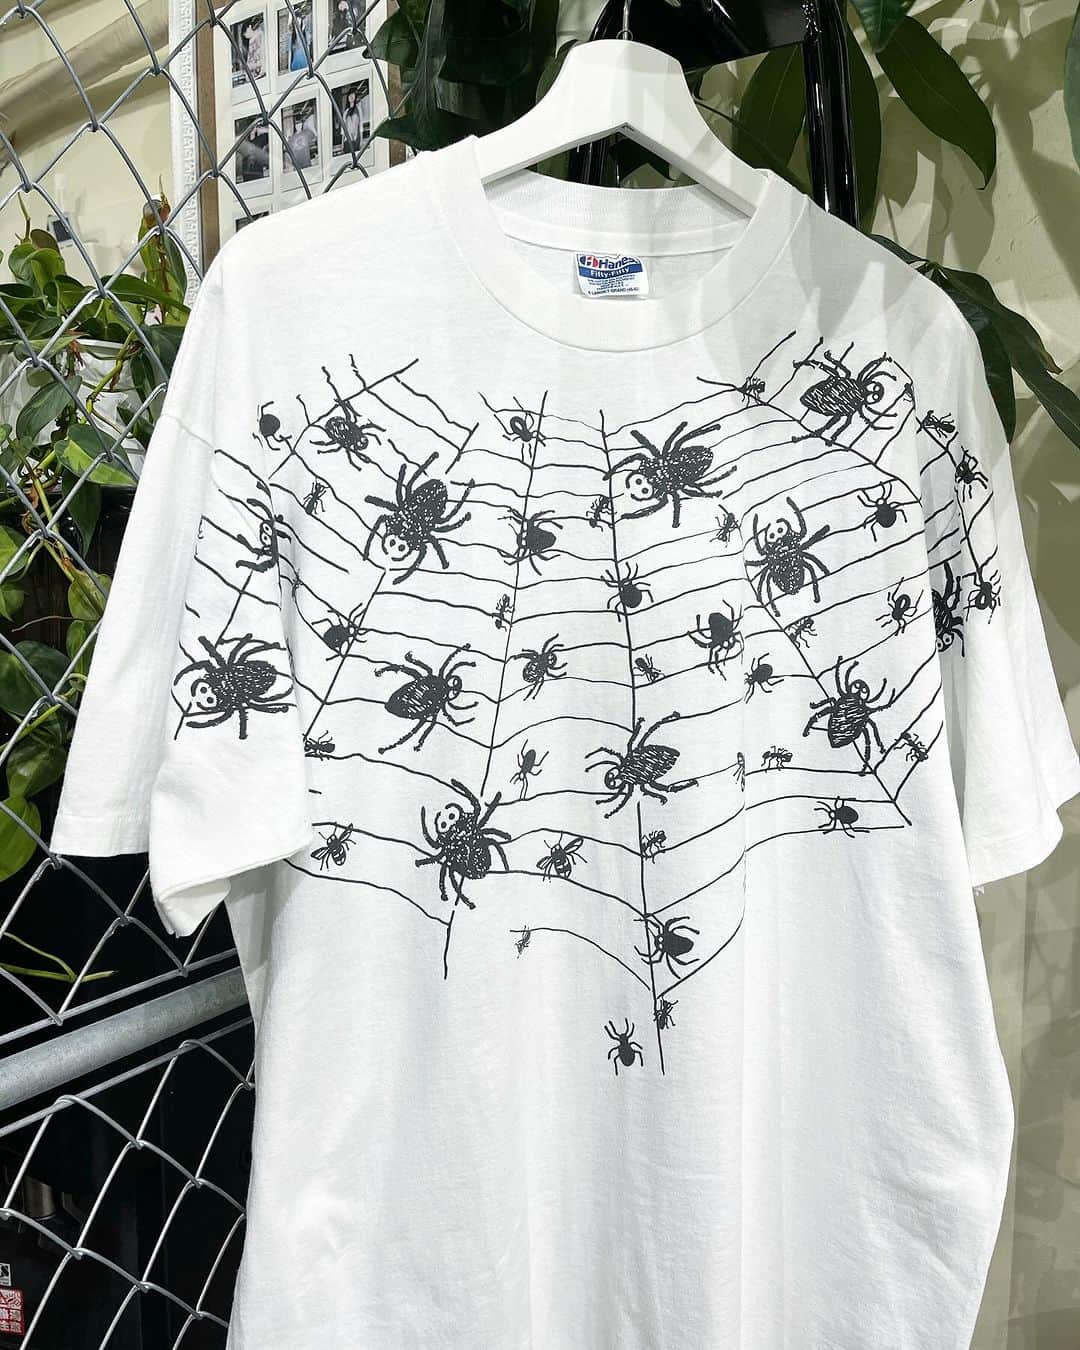 ジャムルのインスタグラム：「1980's～ SPIDER'S WEB 14000y+tax(15400)  1980年代頃の恐らくハロウィン系Tシャツだと思われる1枚。  胸から肩にかけてプリントされたスパイダーウェブに可愛げのある蜘蛛のグラフィック。 前後共にプリントが入るナイスデザインなTシャツです。  WEB SHOPに入荷しております。 是非ご覧ください。 jammru.com  #jammru#jammru_tee #大阪古着屋#心斎橋古着屋#usedmix #vintagetshirt #vintagetee #spiderweb#halloween  #osaka  #fashion  #streetstyle  #streetfashion  #vtg  #vintage  #used  #usedclothing  #古着 #古着屋 #ファッション #70s #80s #90s」